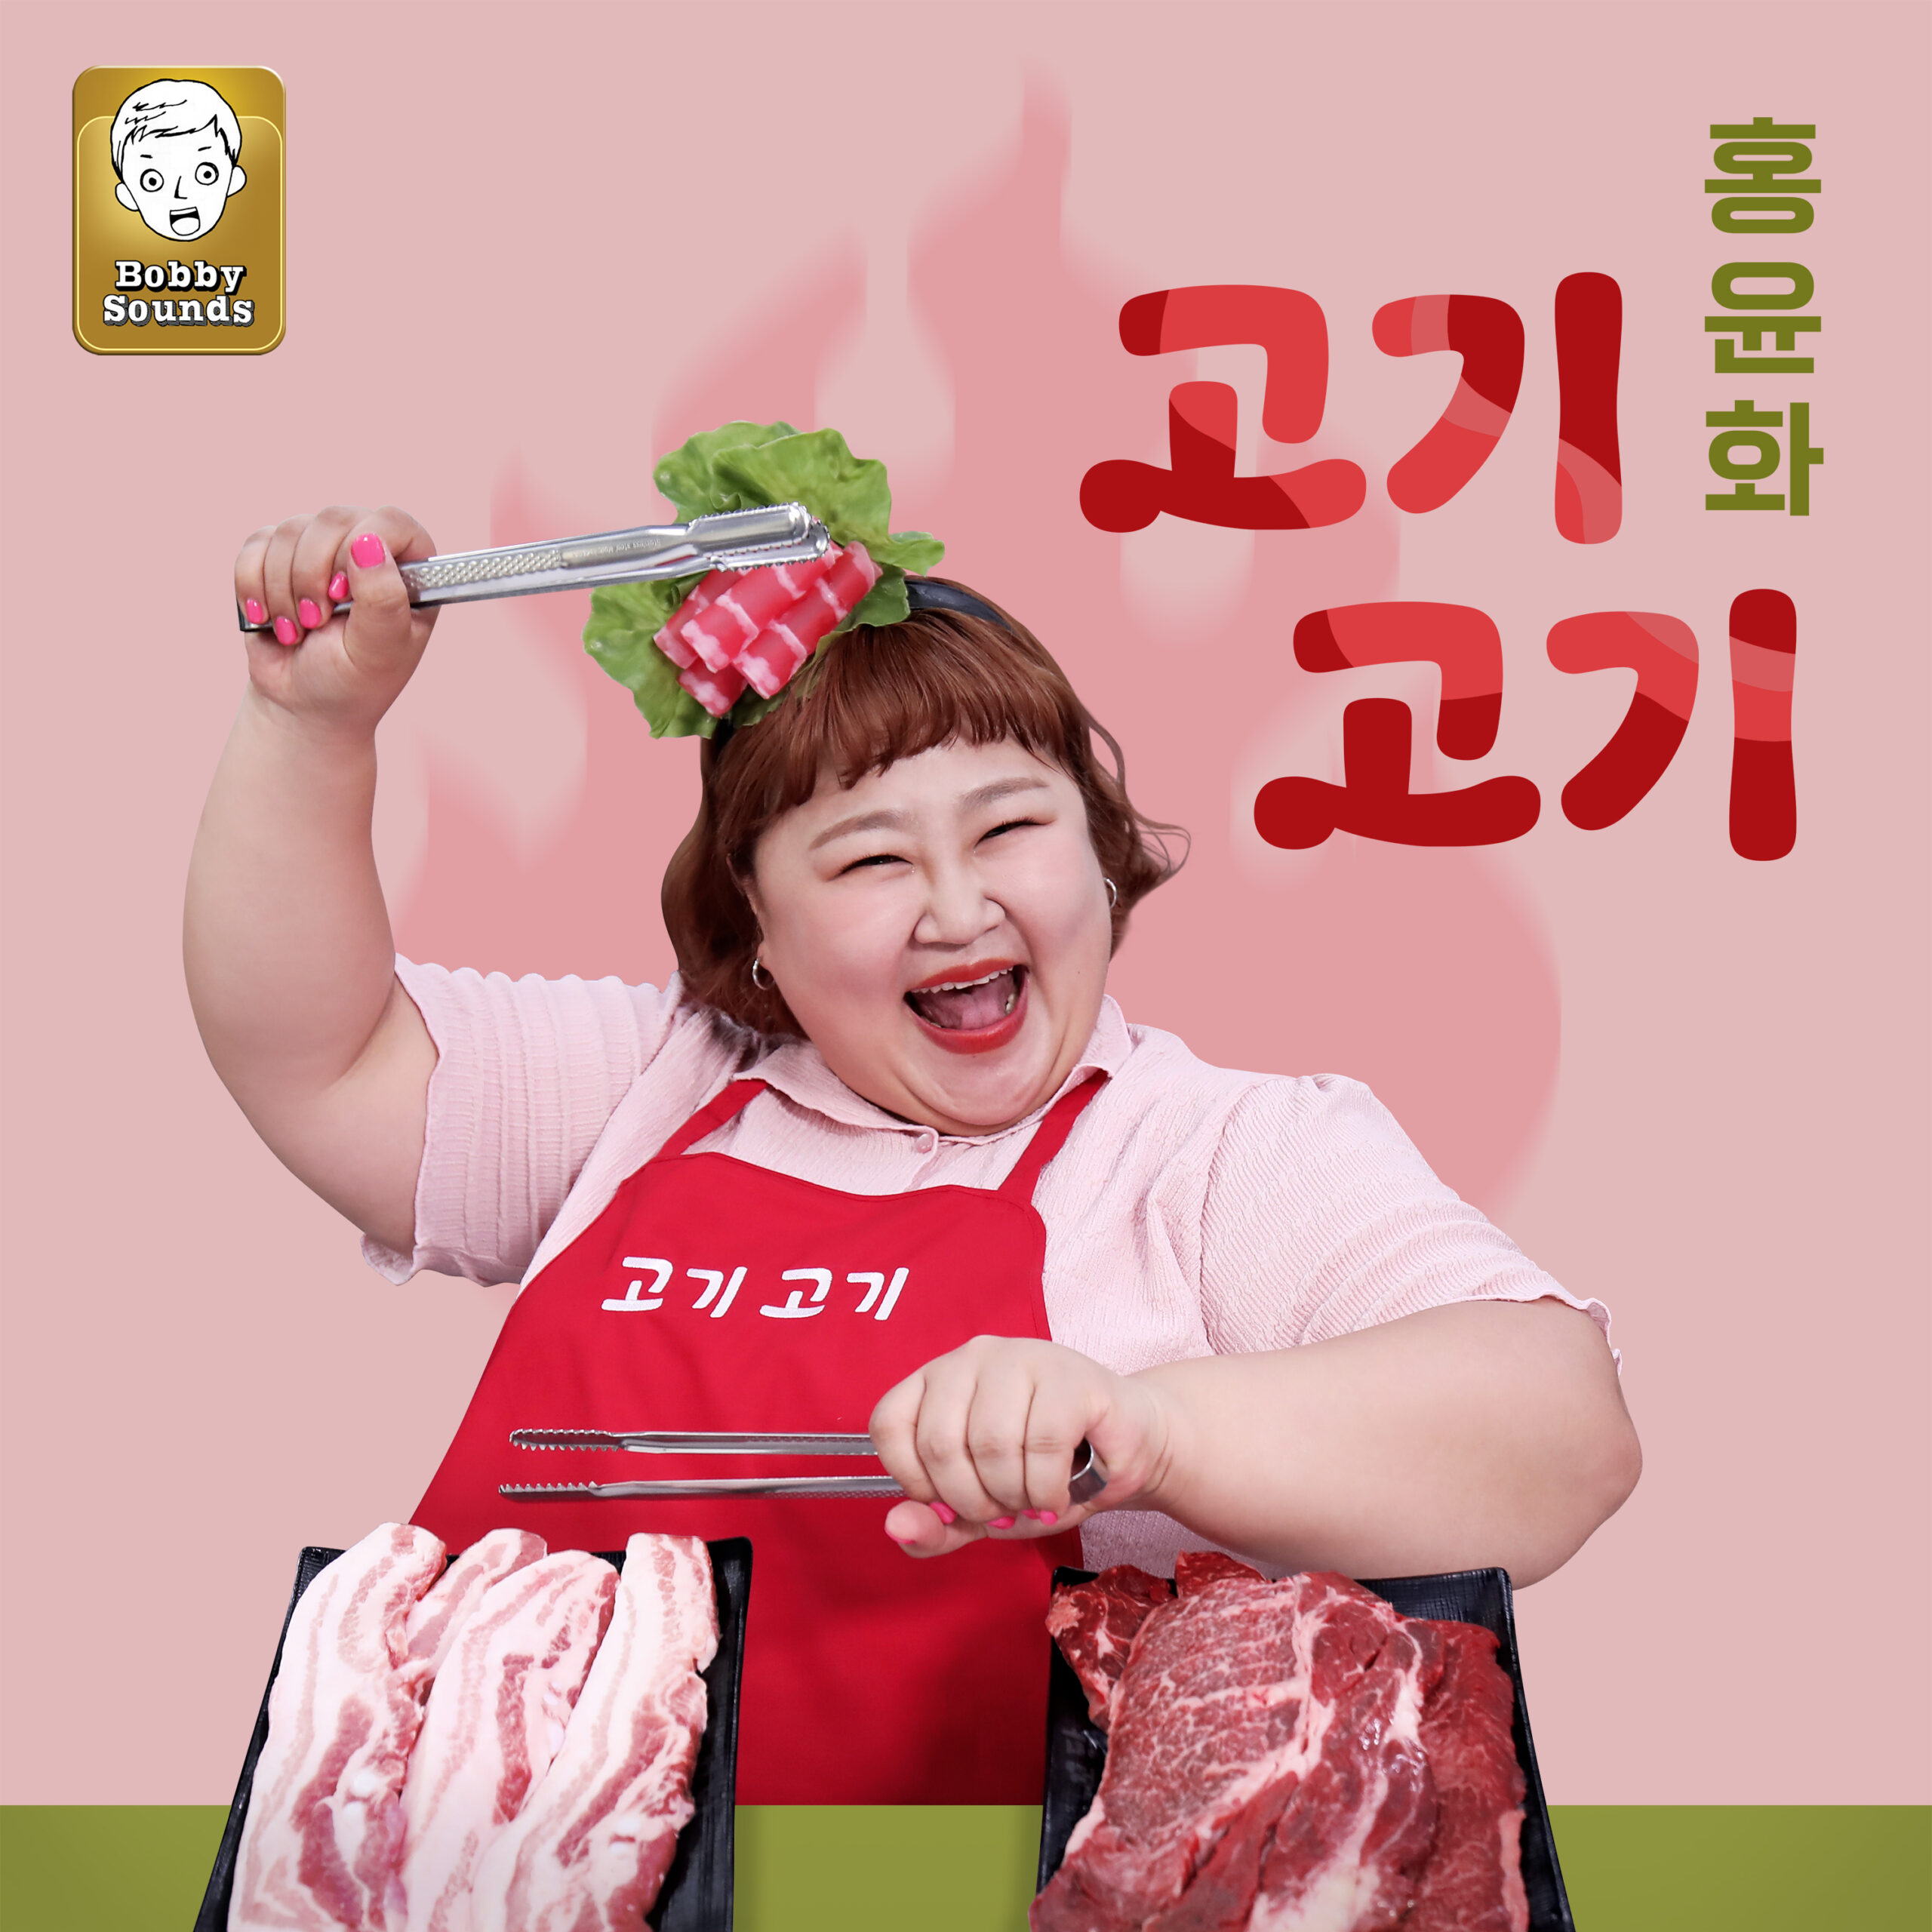 홍윤화 고기 고기 앨범 자켓